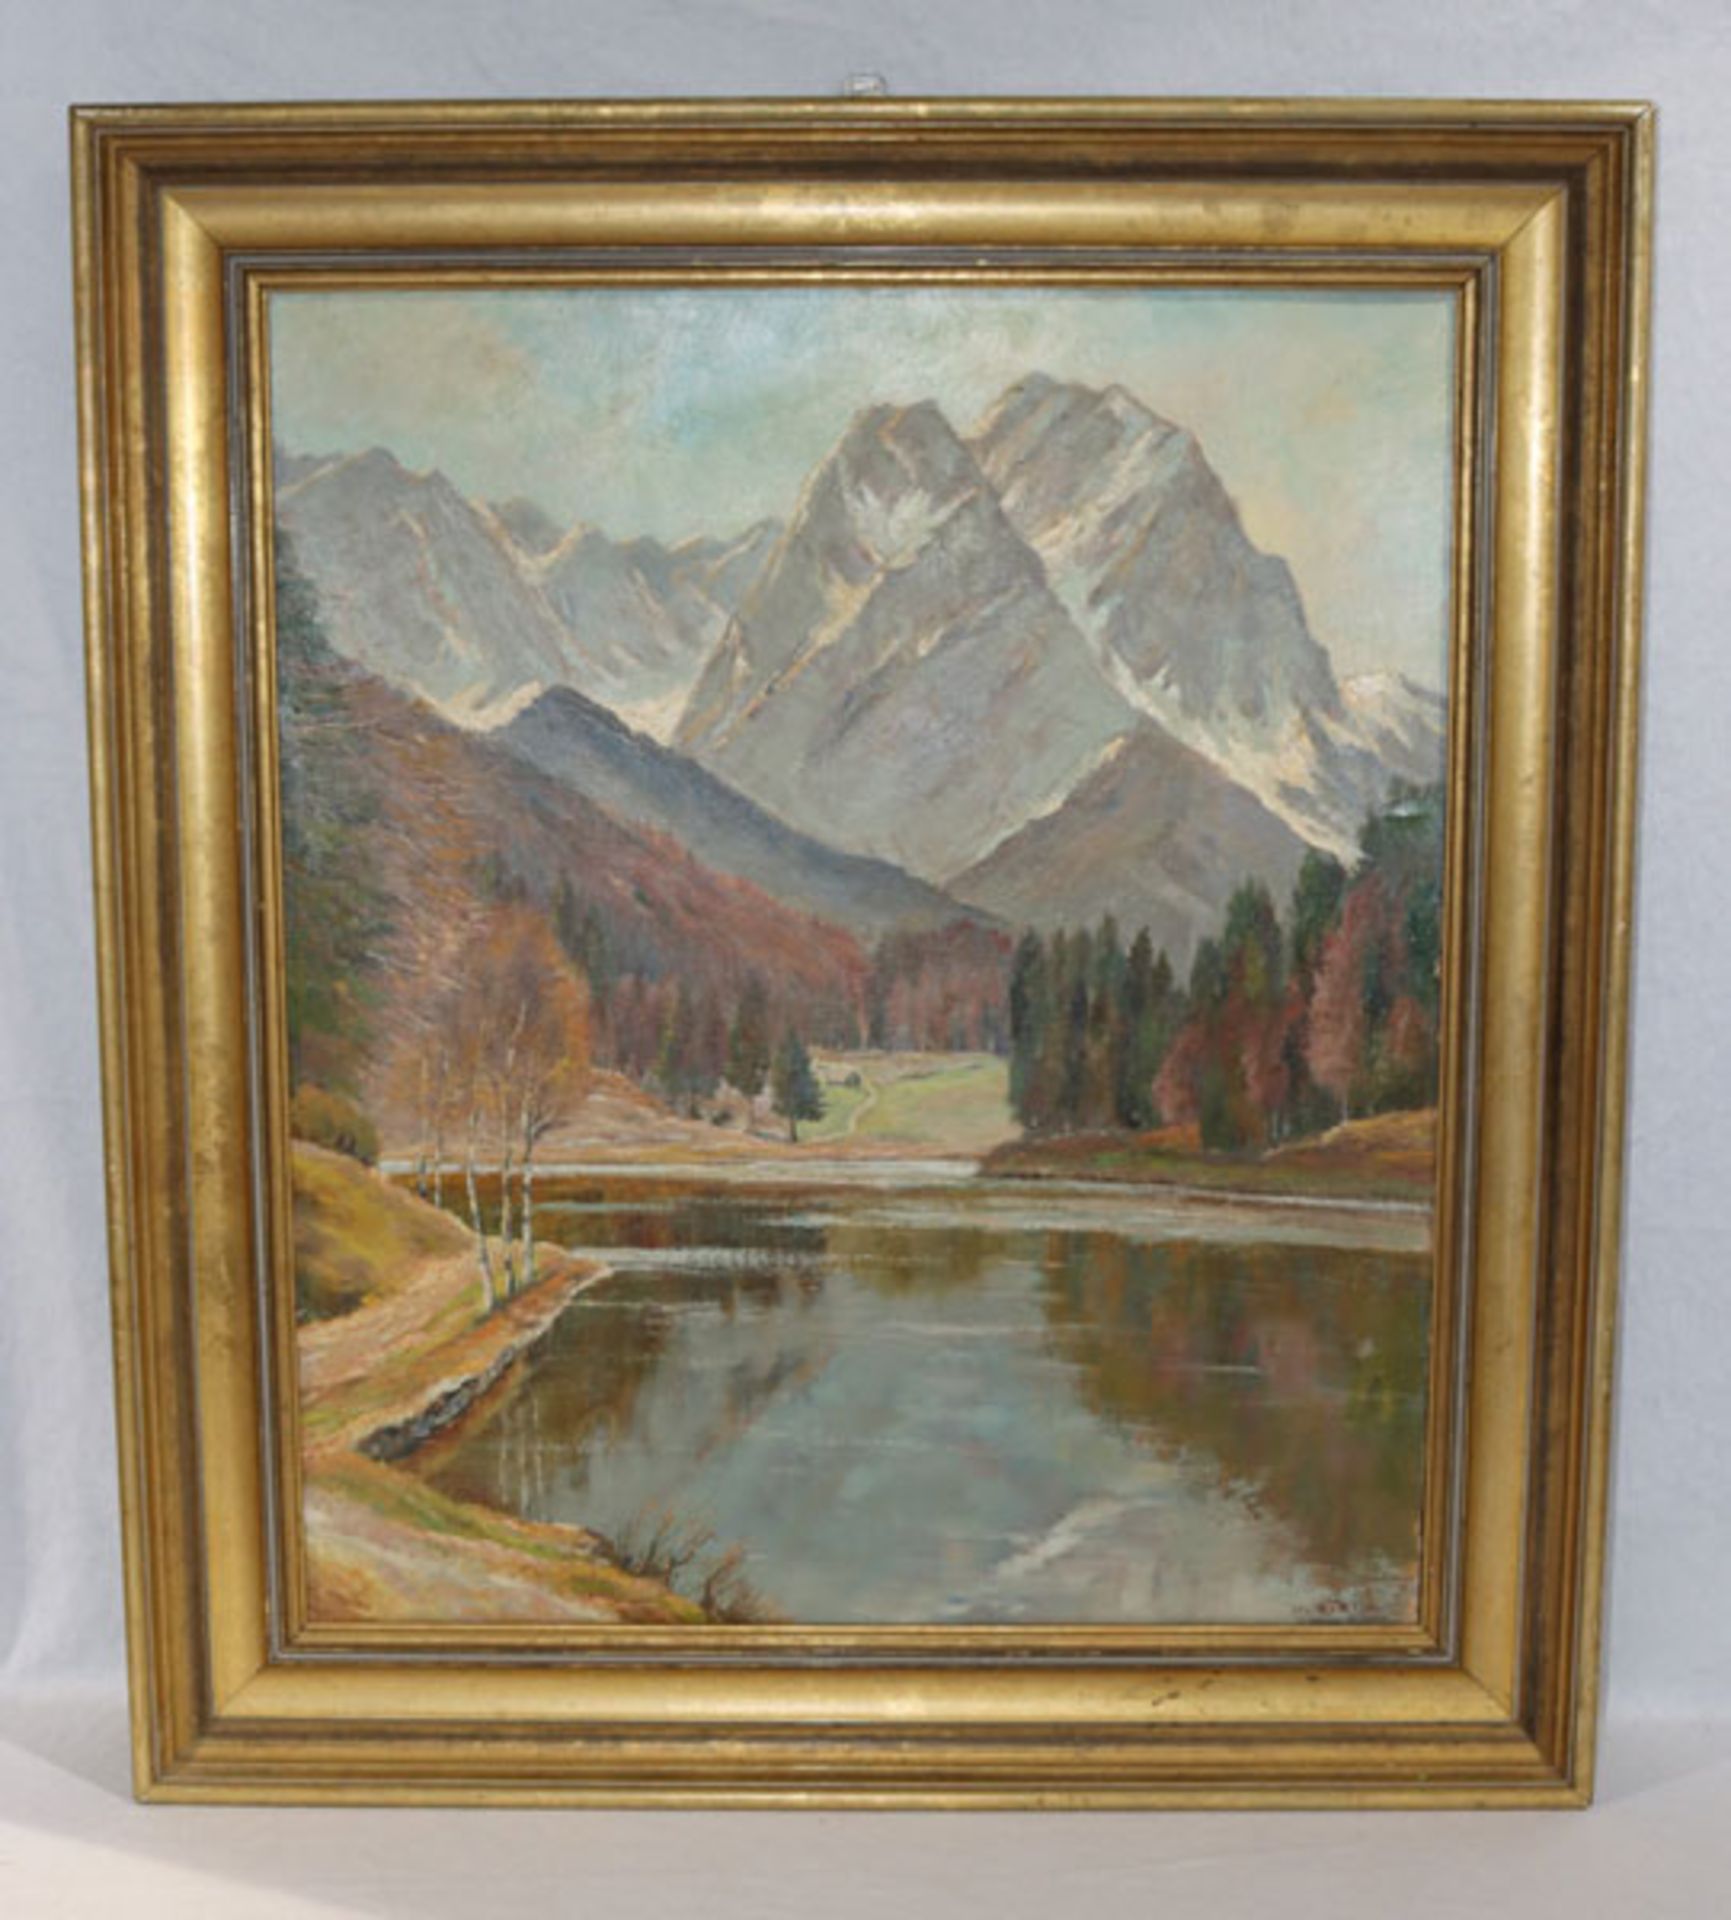 Gemälde ÖL/Malkarton 'Riessersee vor Wettersteingebirge', signiert Jos. Koch, Mch, Josef Koch,